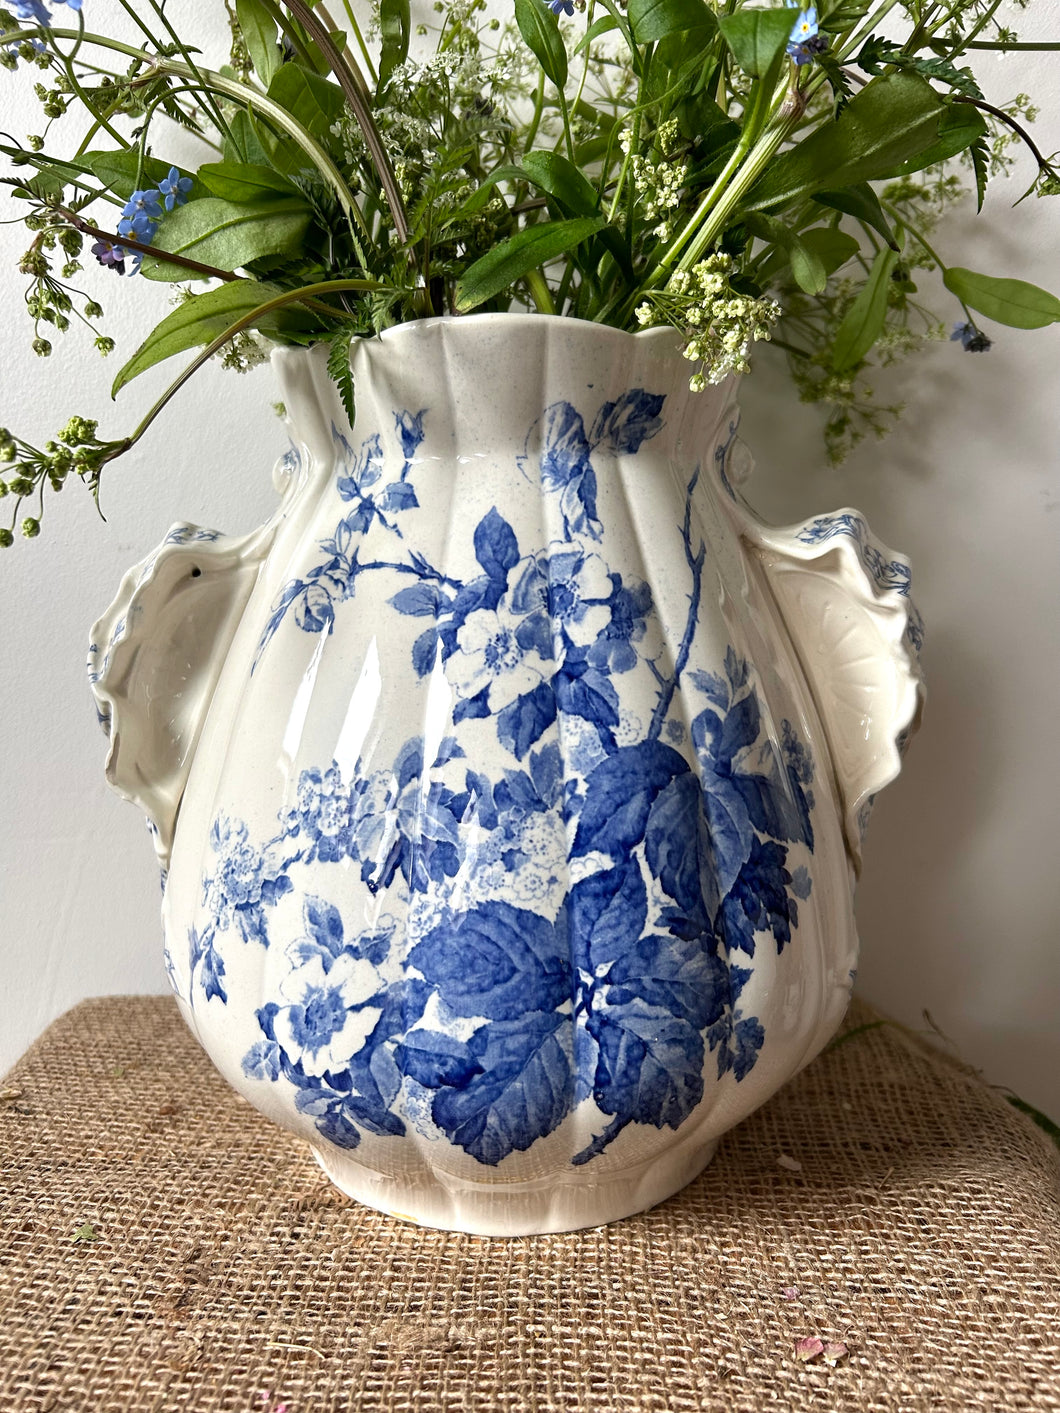 Huge Vintage Blue and White Pot/Vase